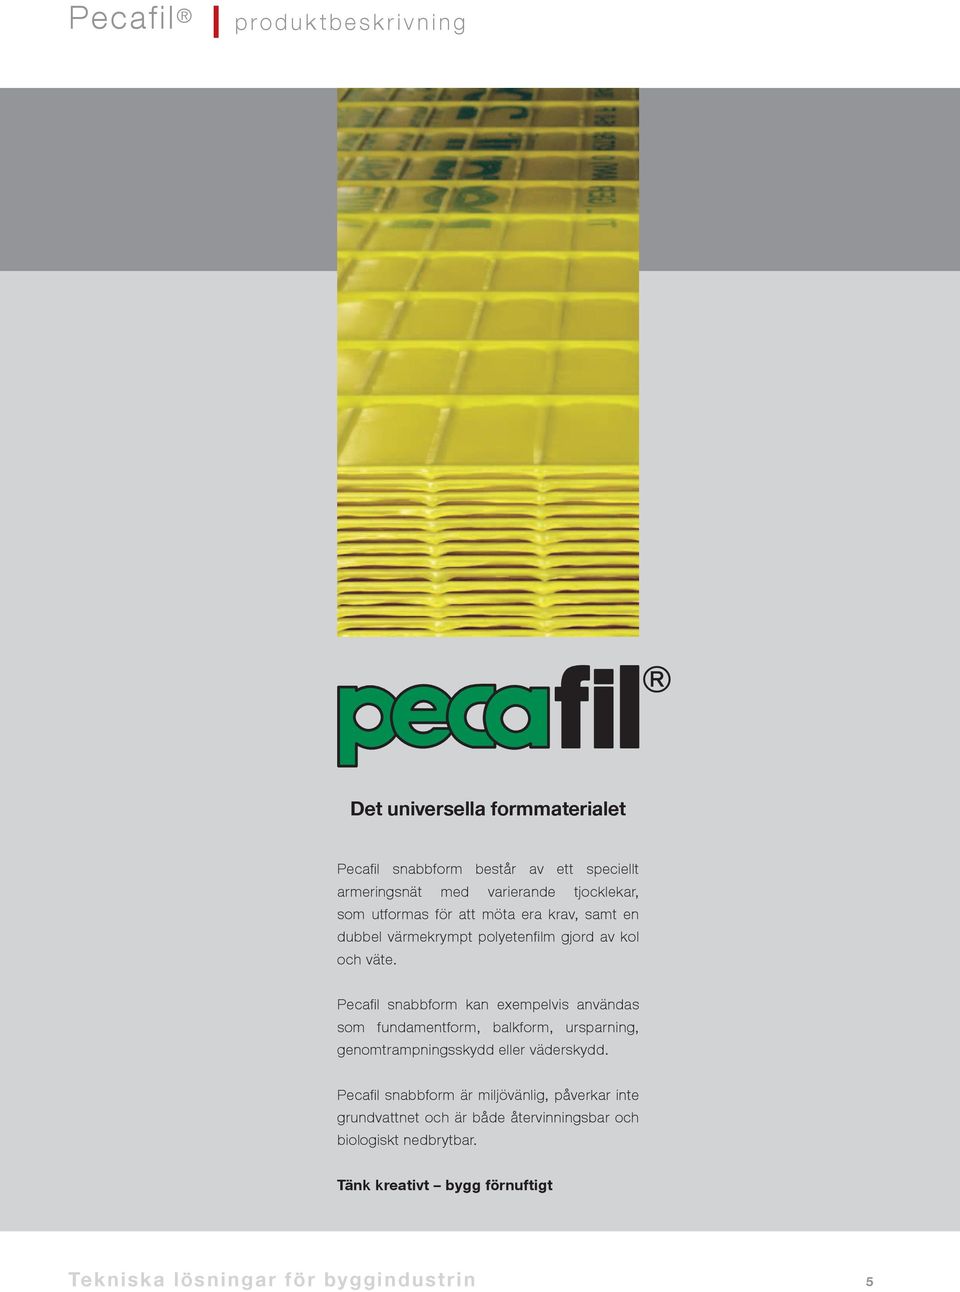 Pecafil snabbform kan exempelvis användas som fundamentform, balkform, ursparning, genomtrampningsskydd eller väderskydd.